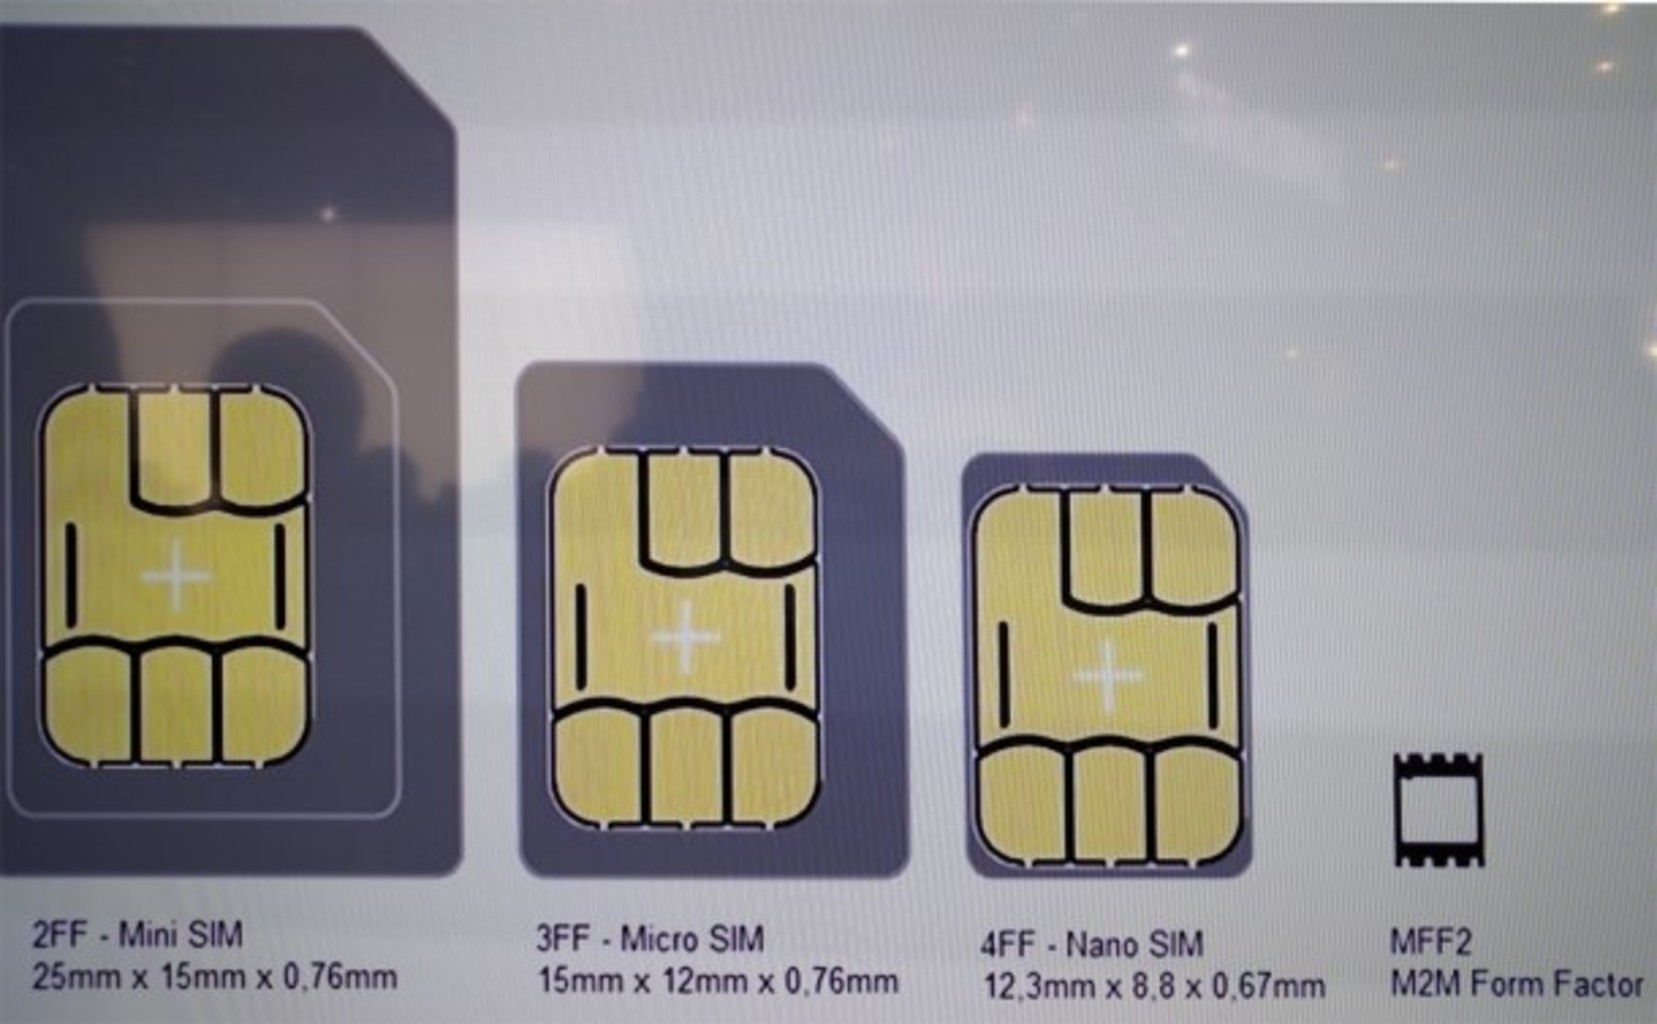 E sio. Mini SIM 2ff. 2ff SIM карта. Micro SIM Card 3ff. Esim 2sim.